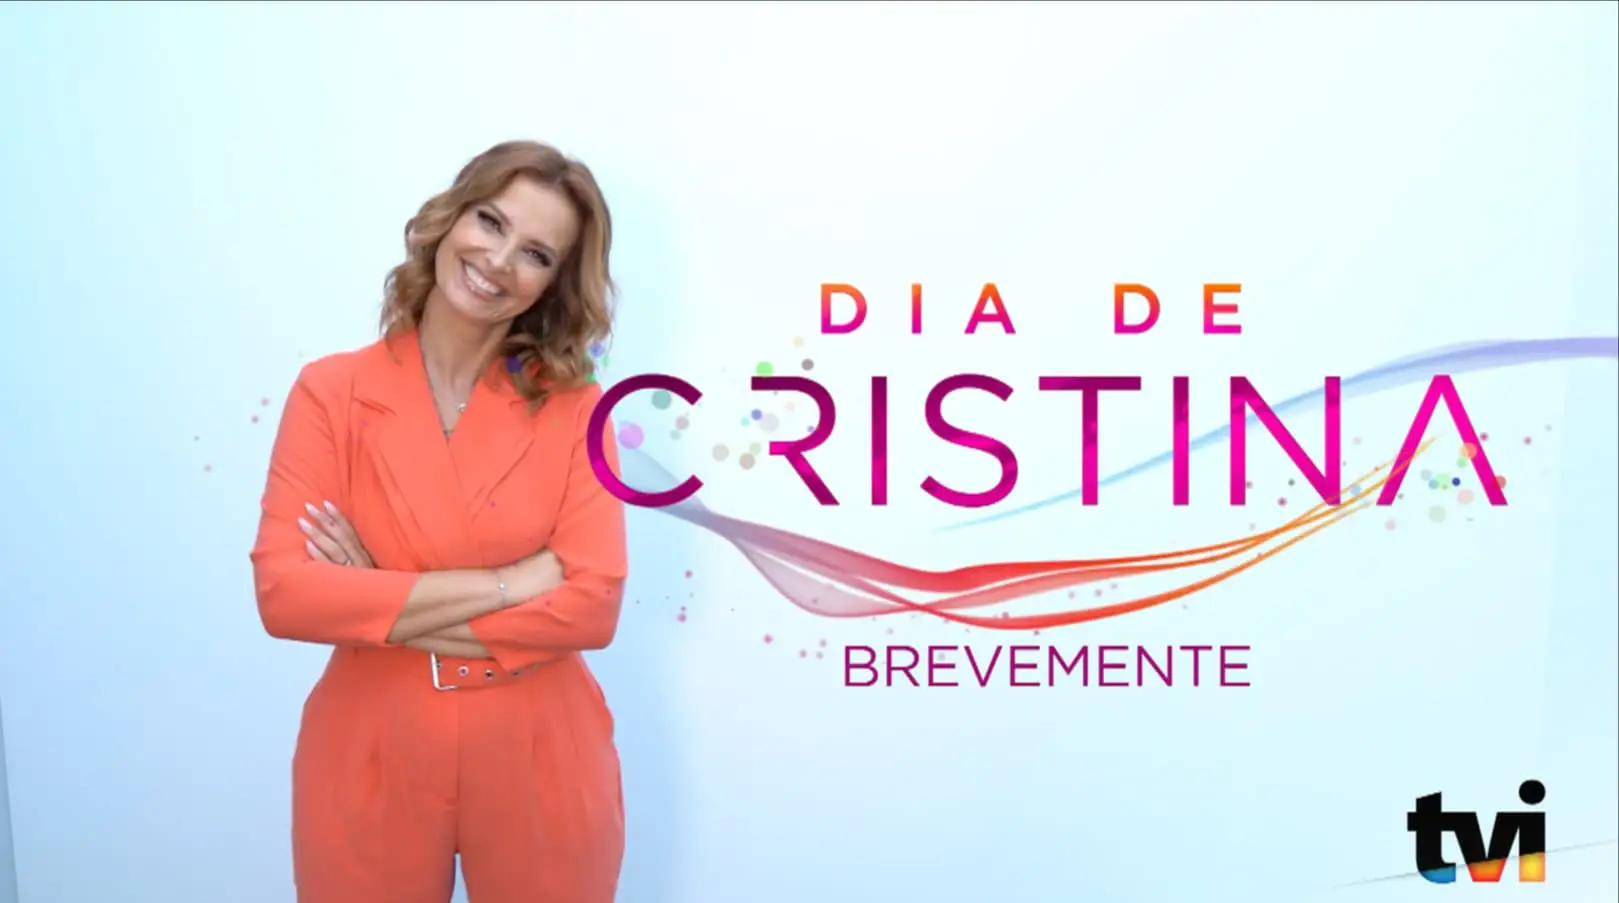 Cristina Ferreira Dia De Cristina